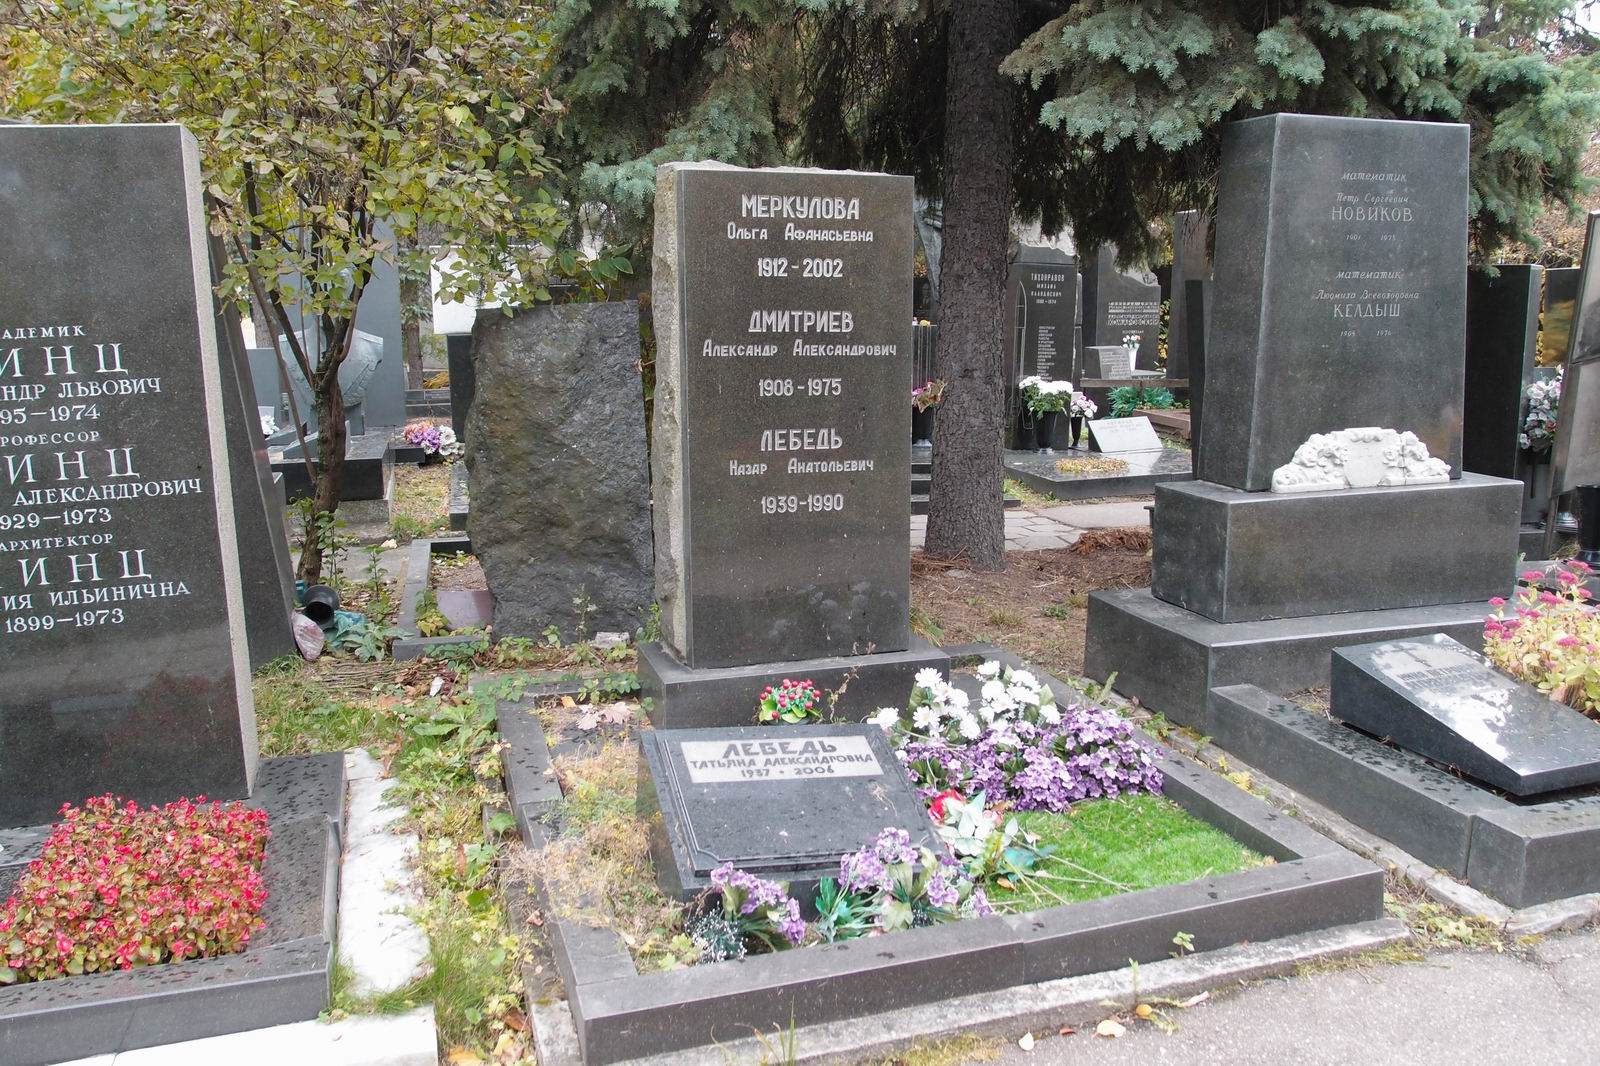 Памятник на могиле Дмитриева А.А. (1908-1975), на Новодевичьем кладбище (7-10-14).